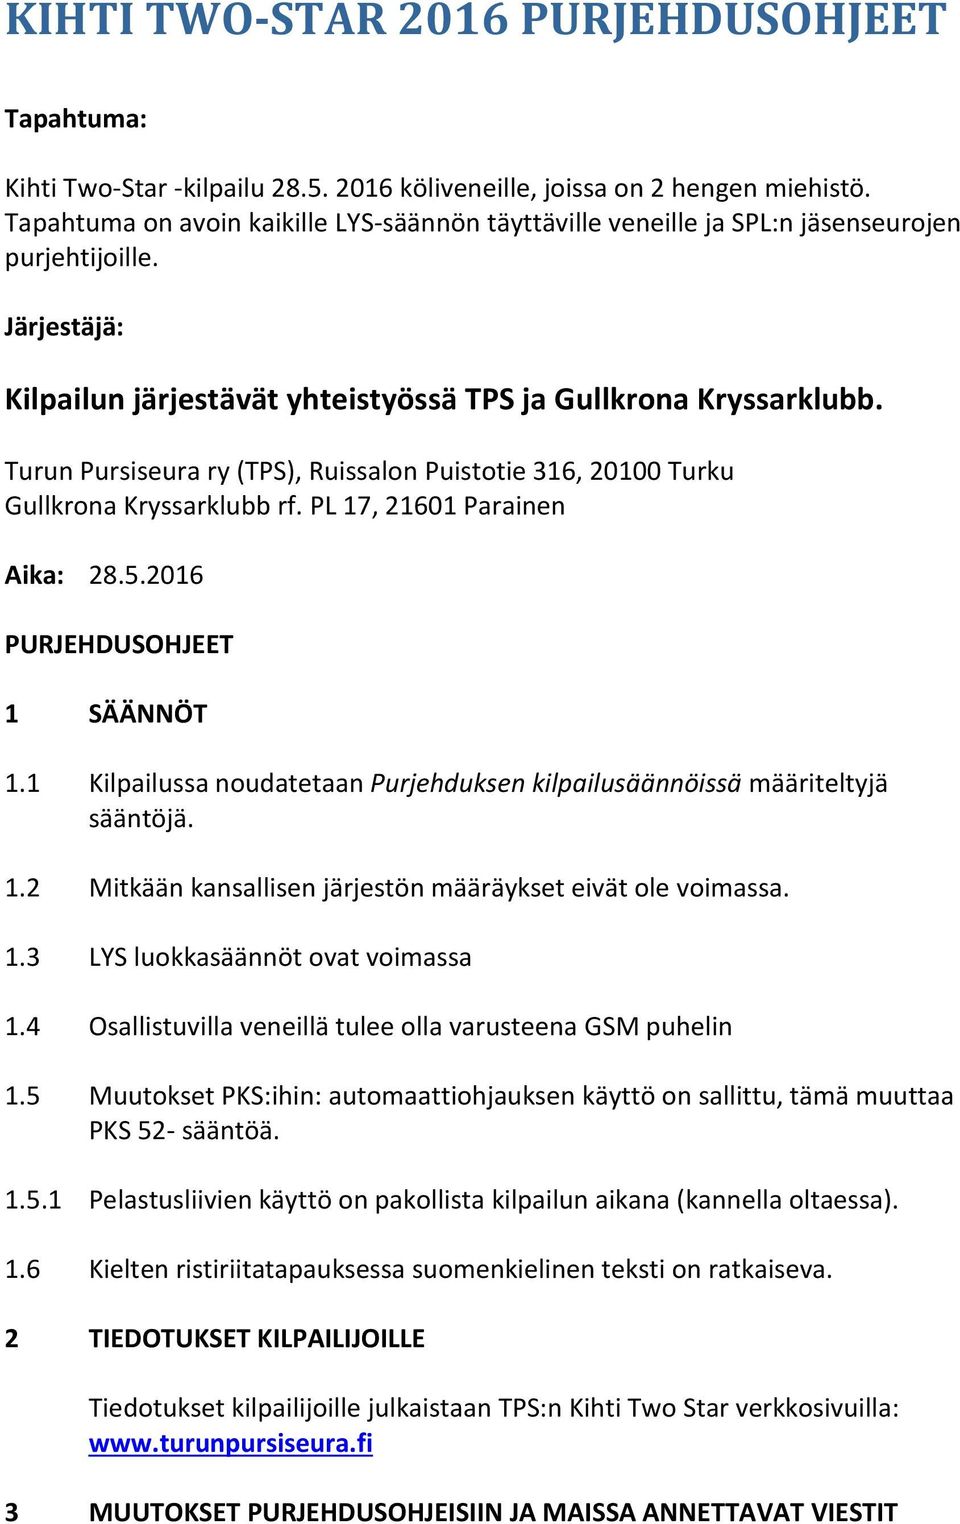 Turun Pursiseura ry (TPS), Ruissalon Puistotie 316, 20100 Turku Gullkrona Kryssarklubb rf. PL 17, 21601 Parainen Aika: 28.5.2016 PURJEHDUSOHJEET 1 SÄÄNNÖT 1.